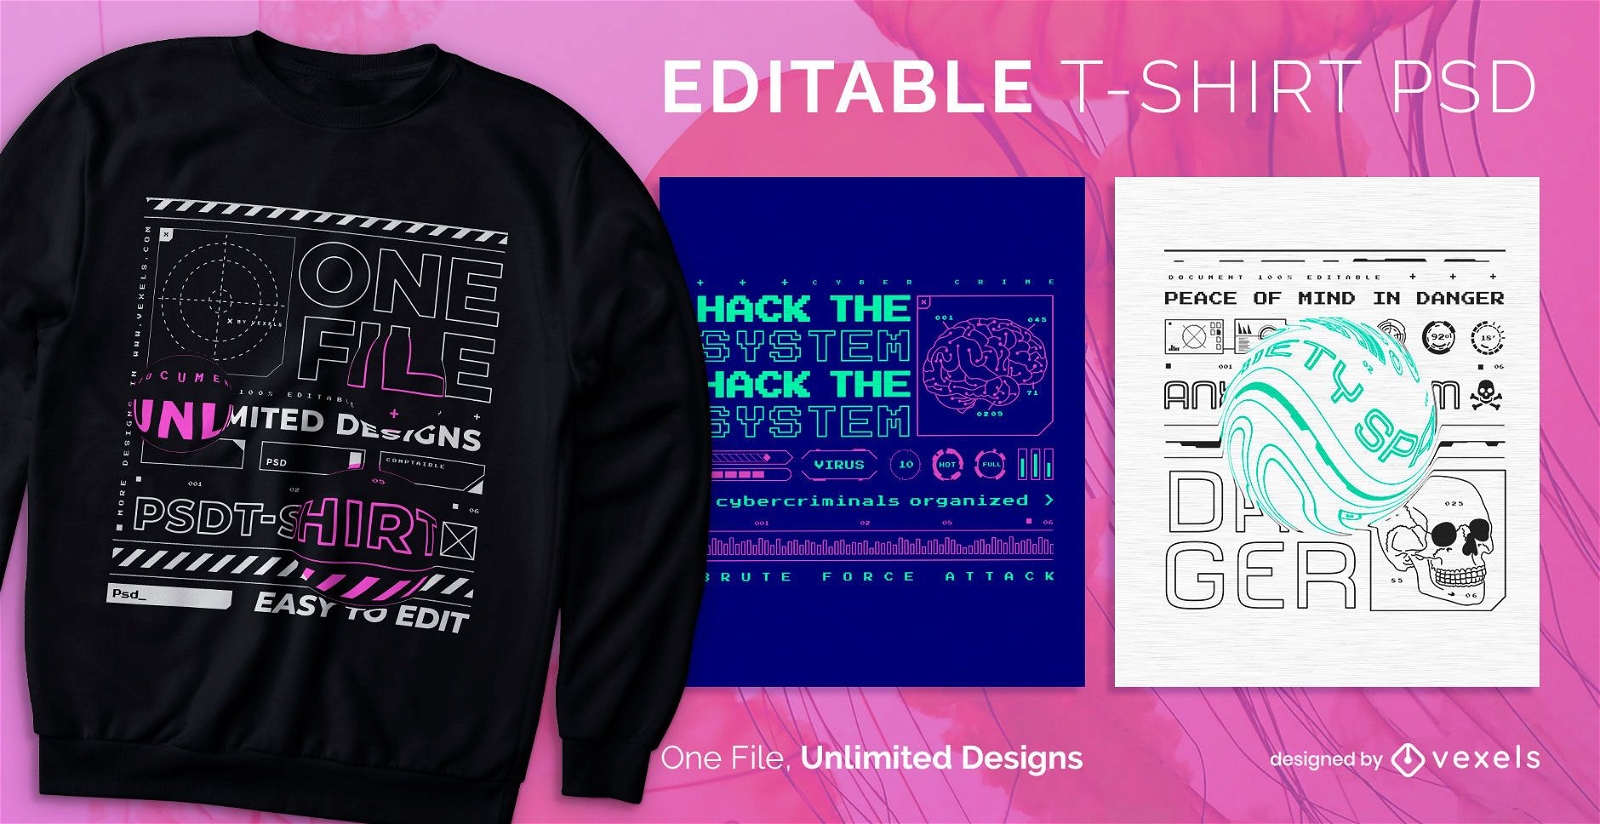 Hacker Tech skalierbares T-Shirt psd